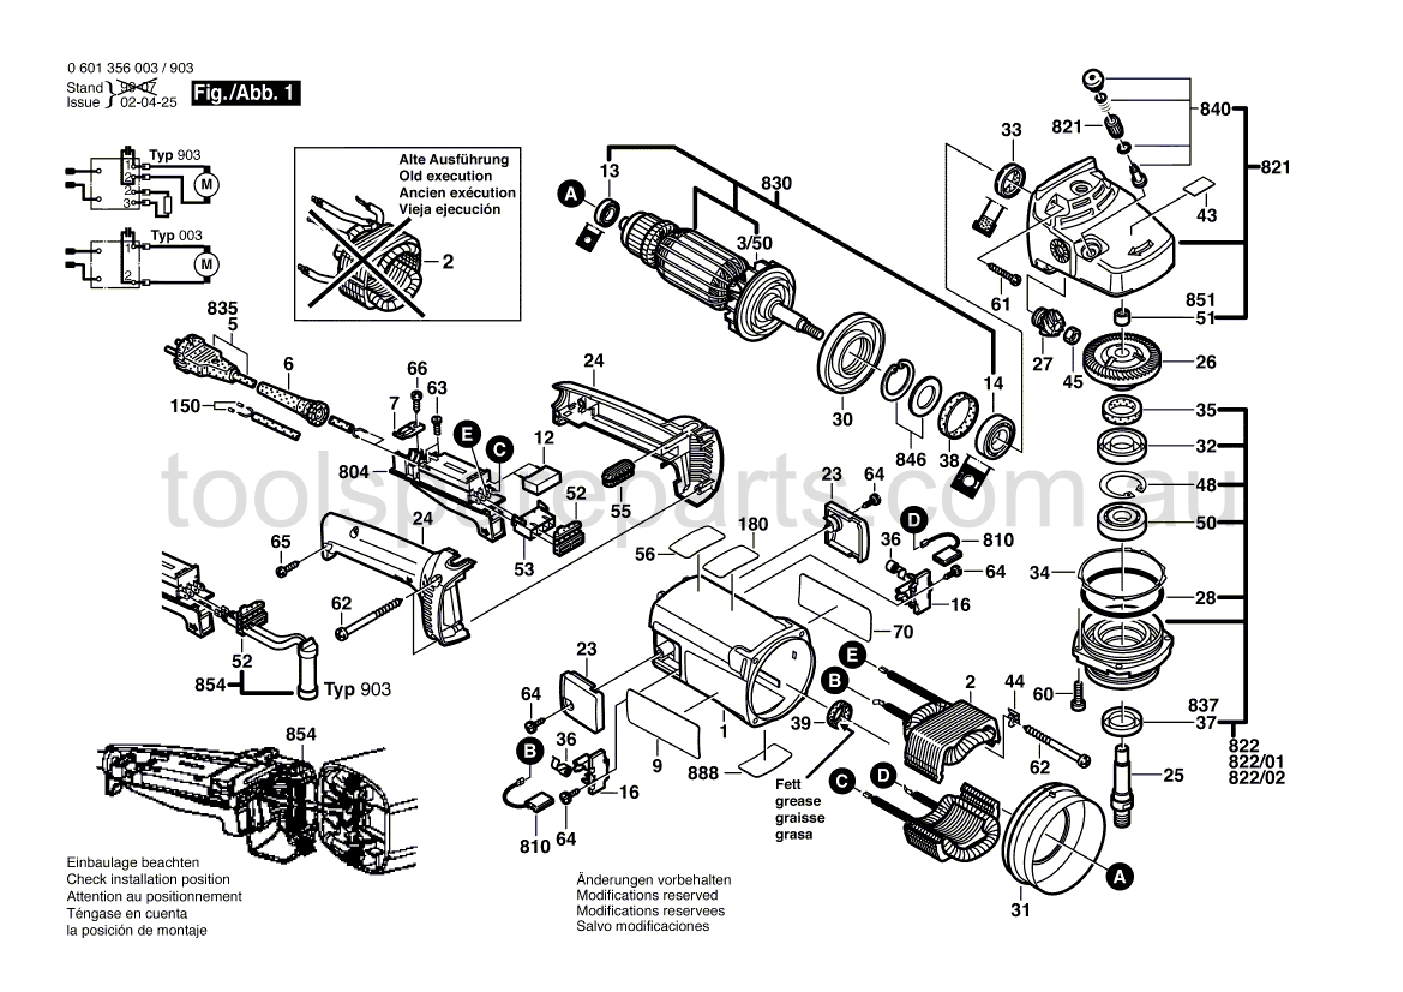 Bosch GWS 20-180 0601356037  Diagram 1